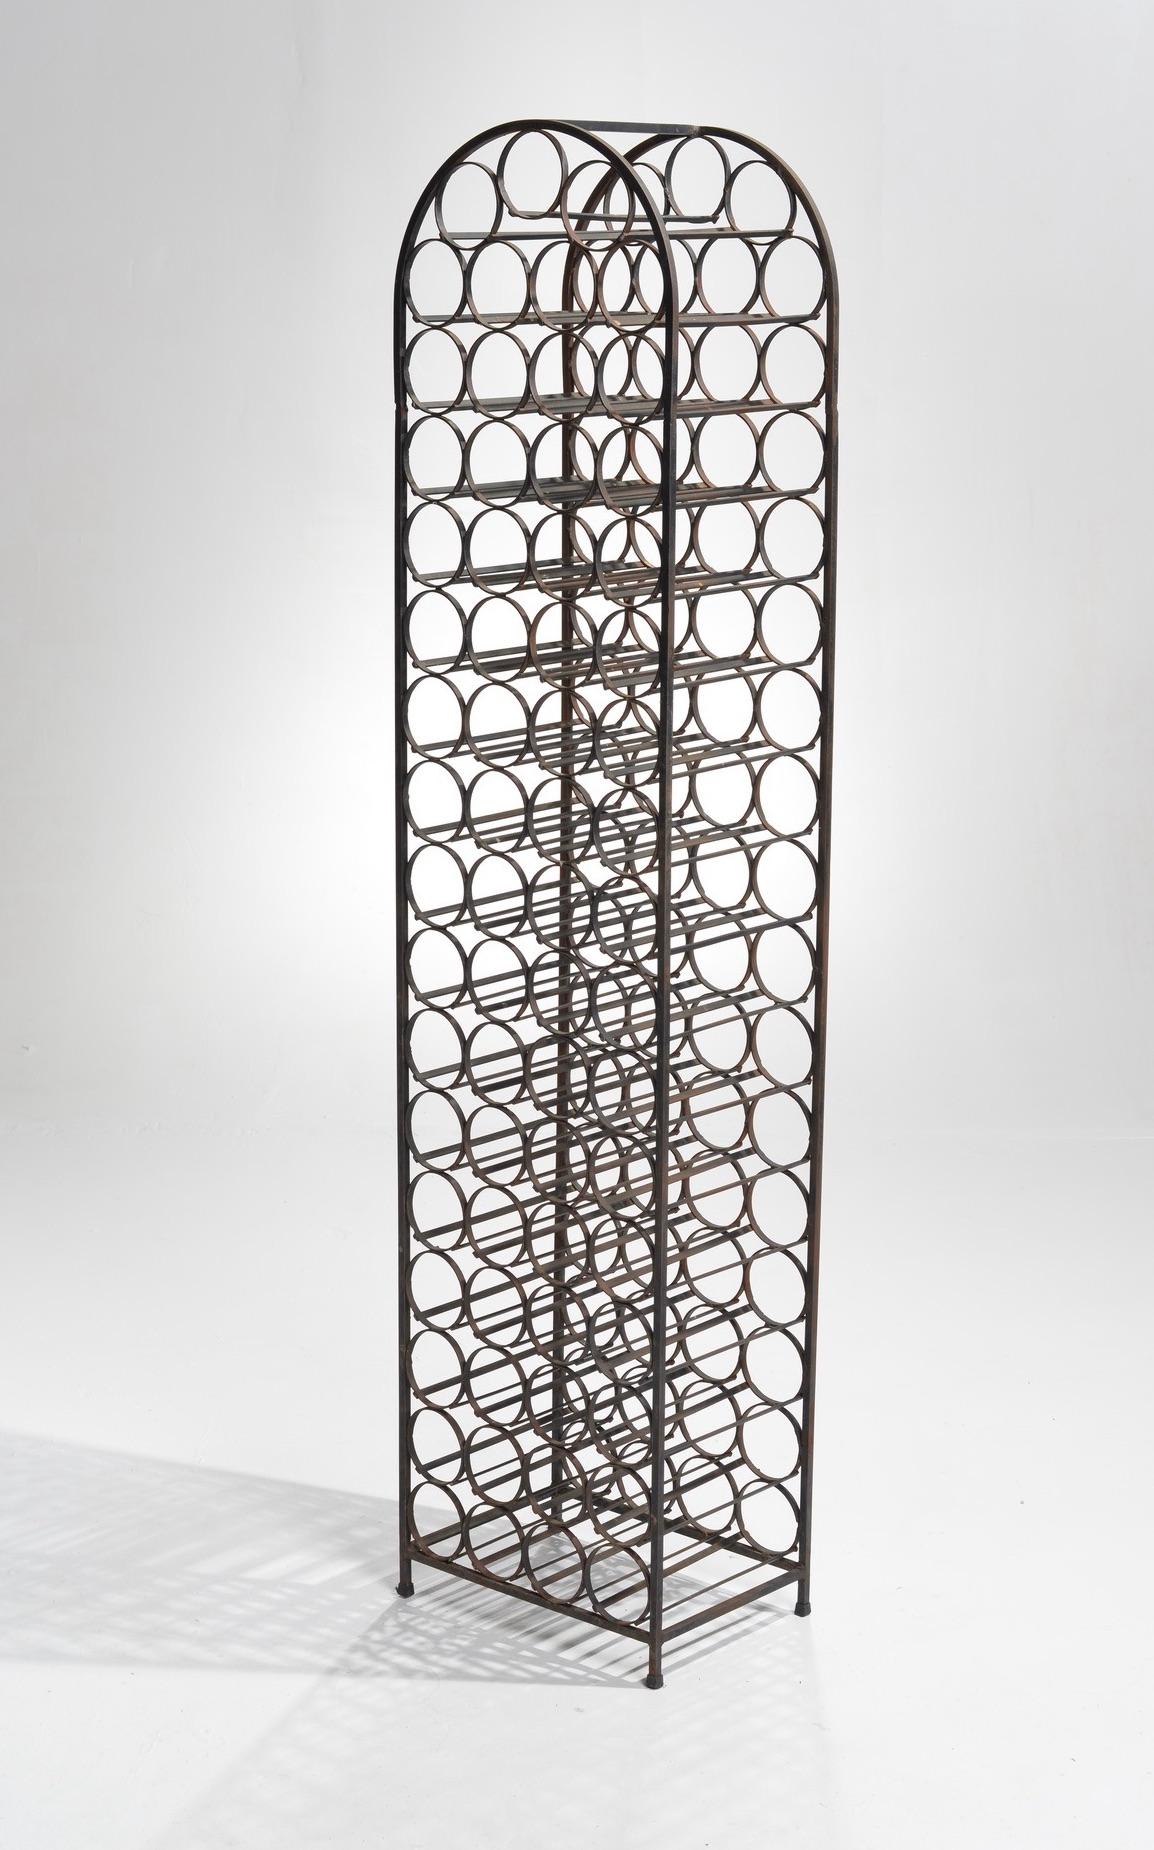 Porte-bouteilles en fer forgé à sommet en forme de dôme, conçu par Arthur Umanoff au début des années 1960. Un élément de base du design moderne du milieu du siècle.